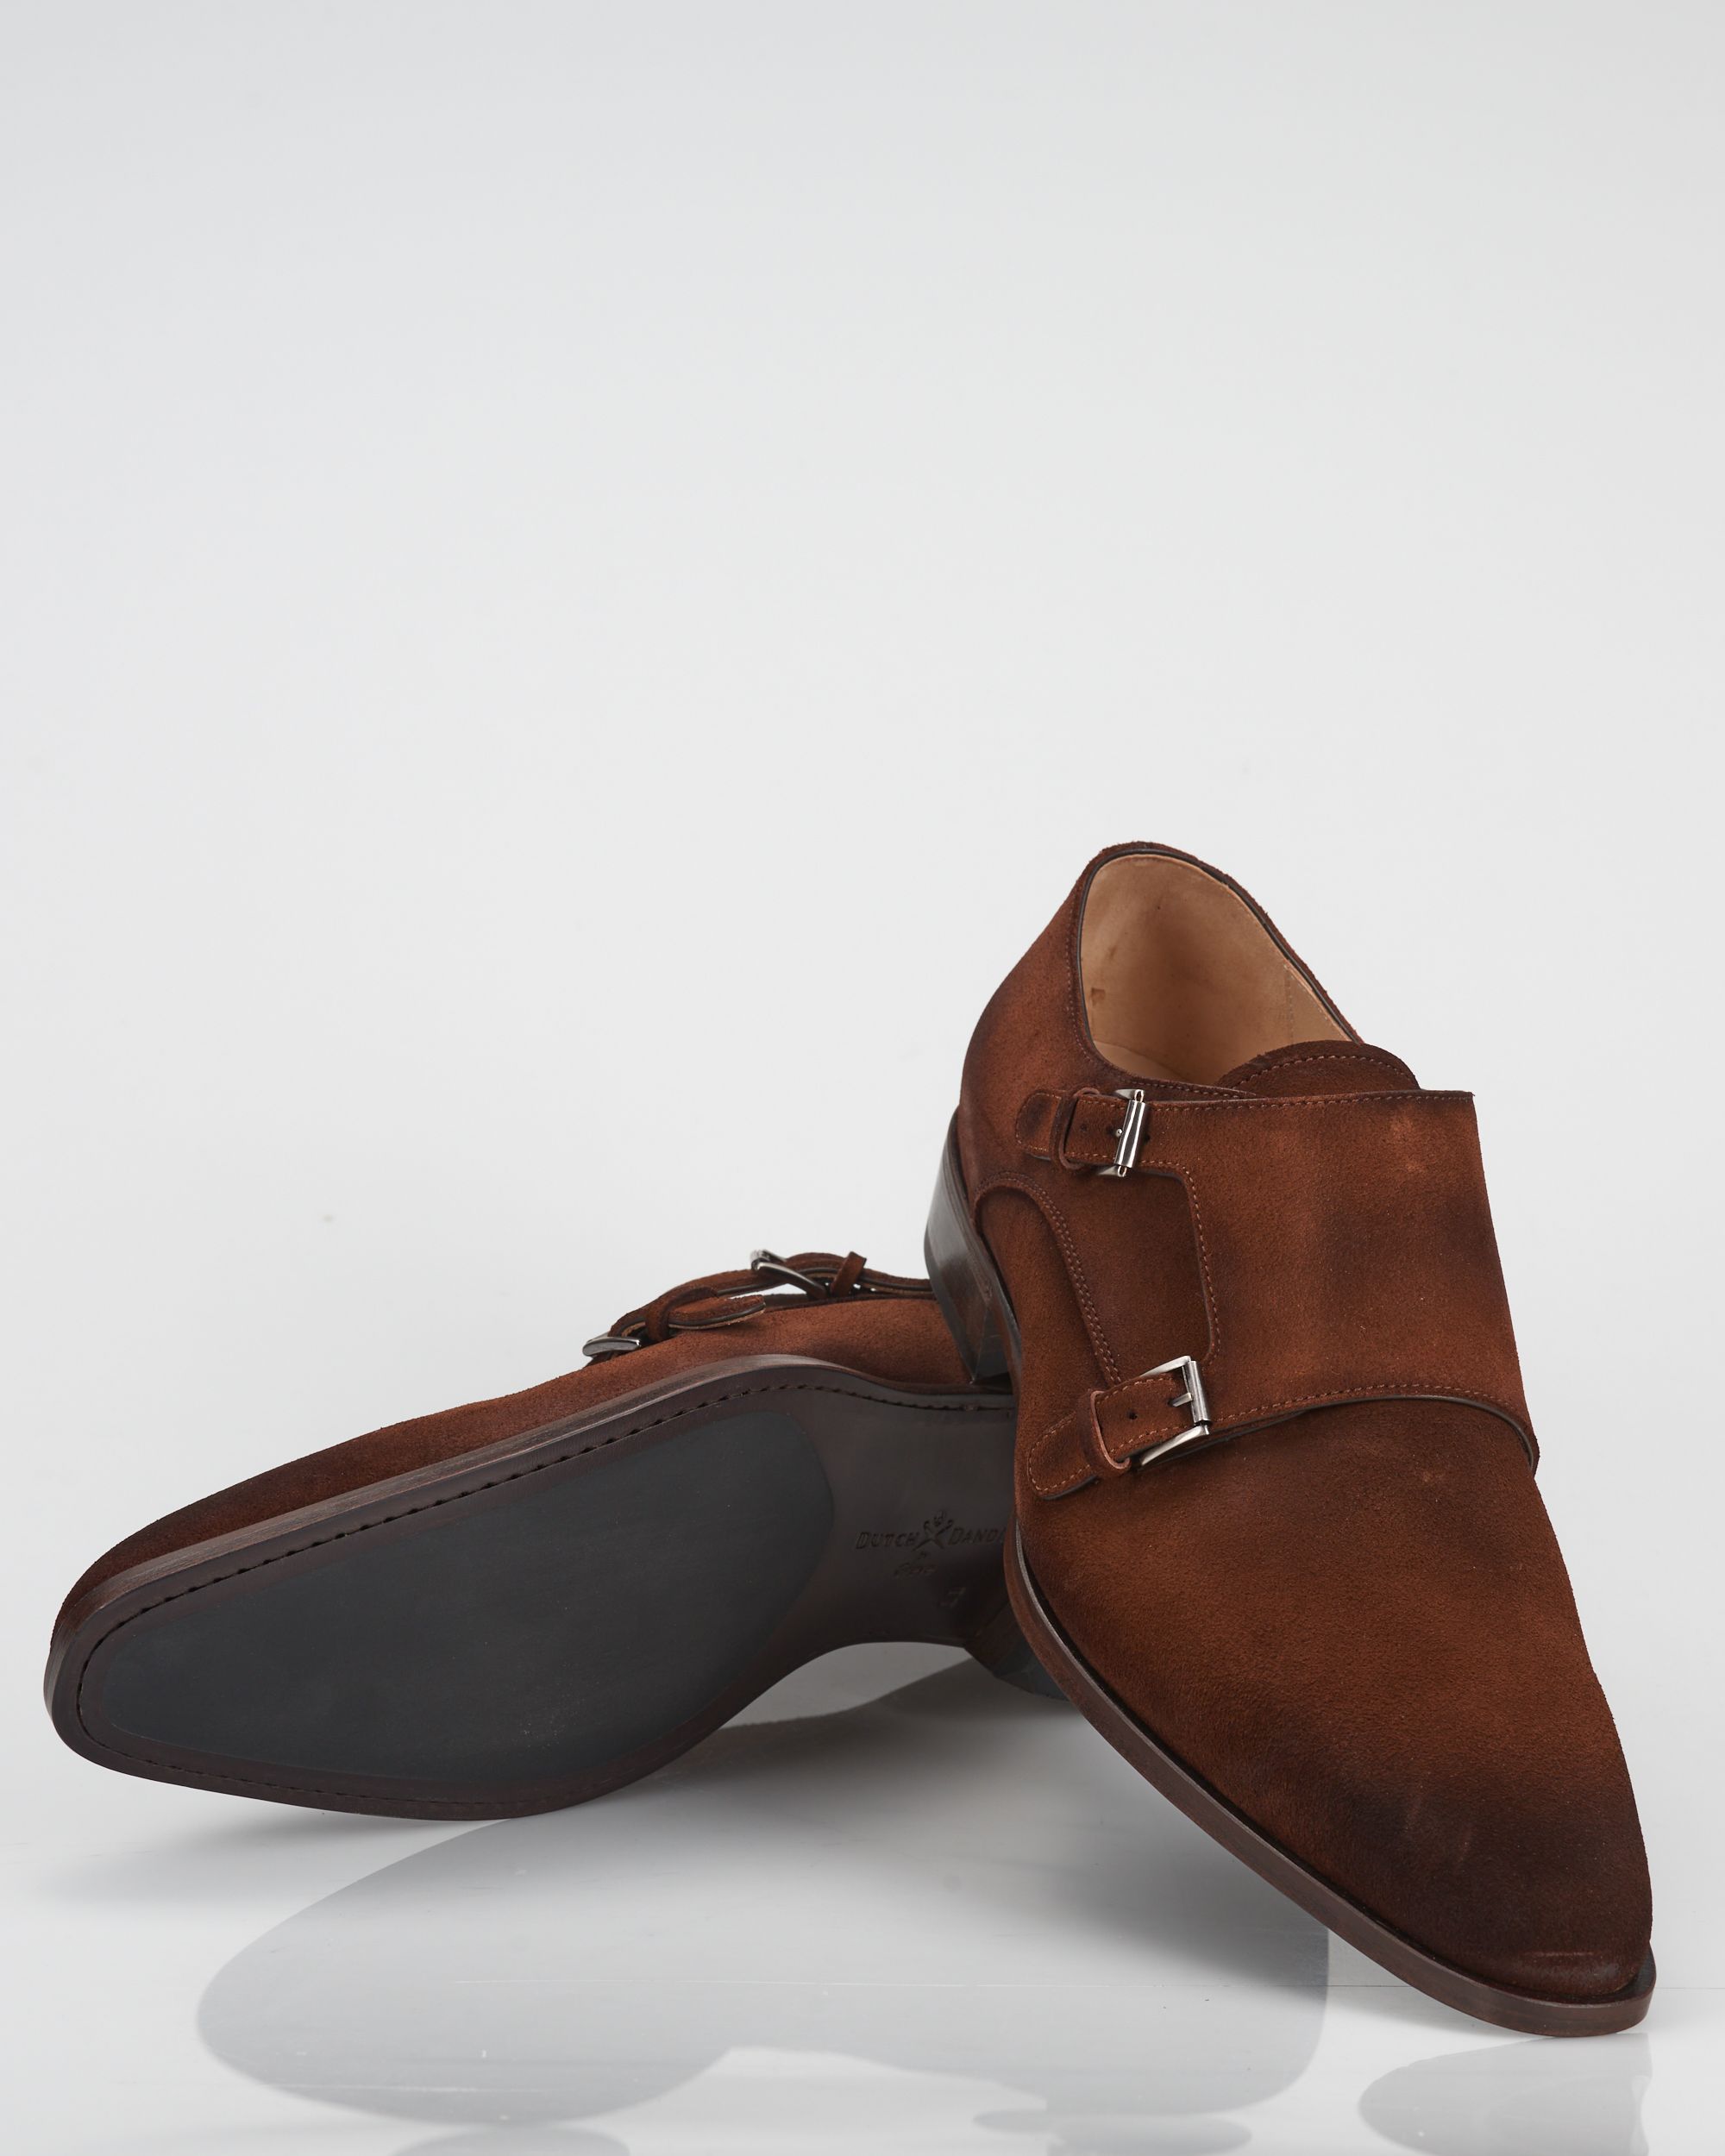 Dutch Dandies x Greve Geklede schoenen Cognac 059079-001-10